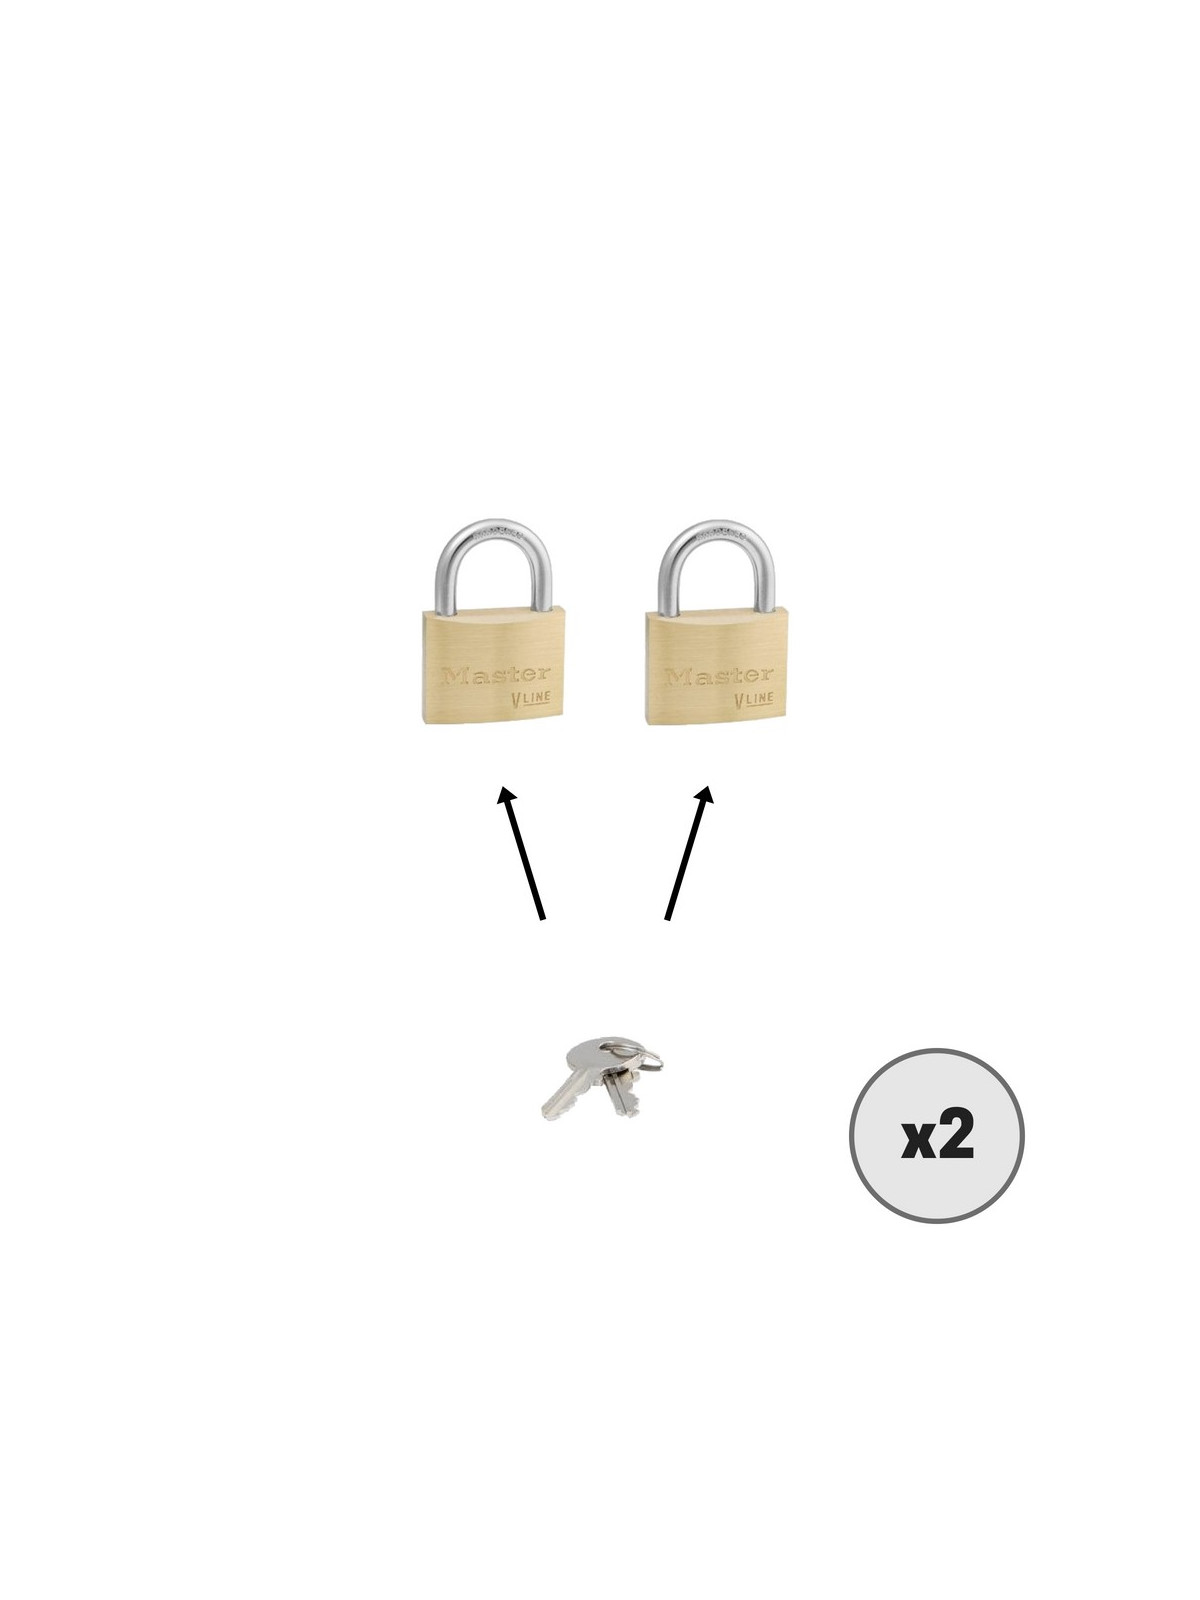 Lot de 2 cadenas MASTER LOCK 4150 s’entrouvrant avec la même clé